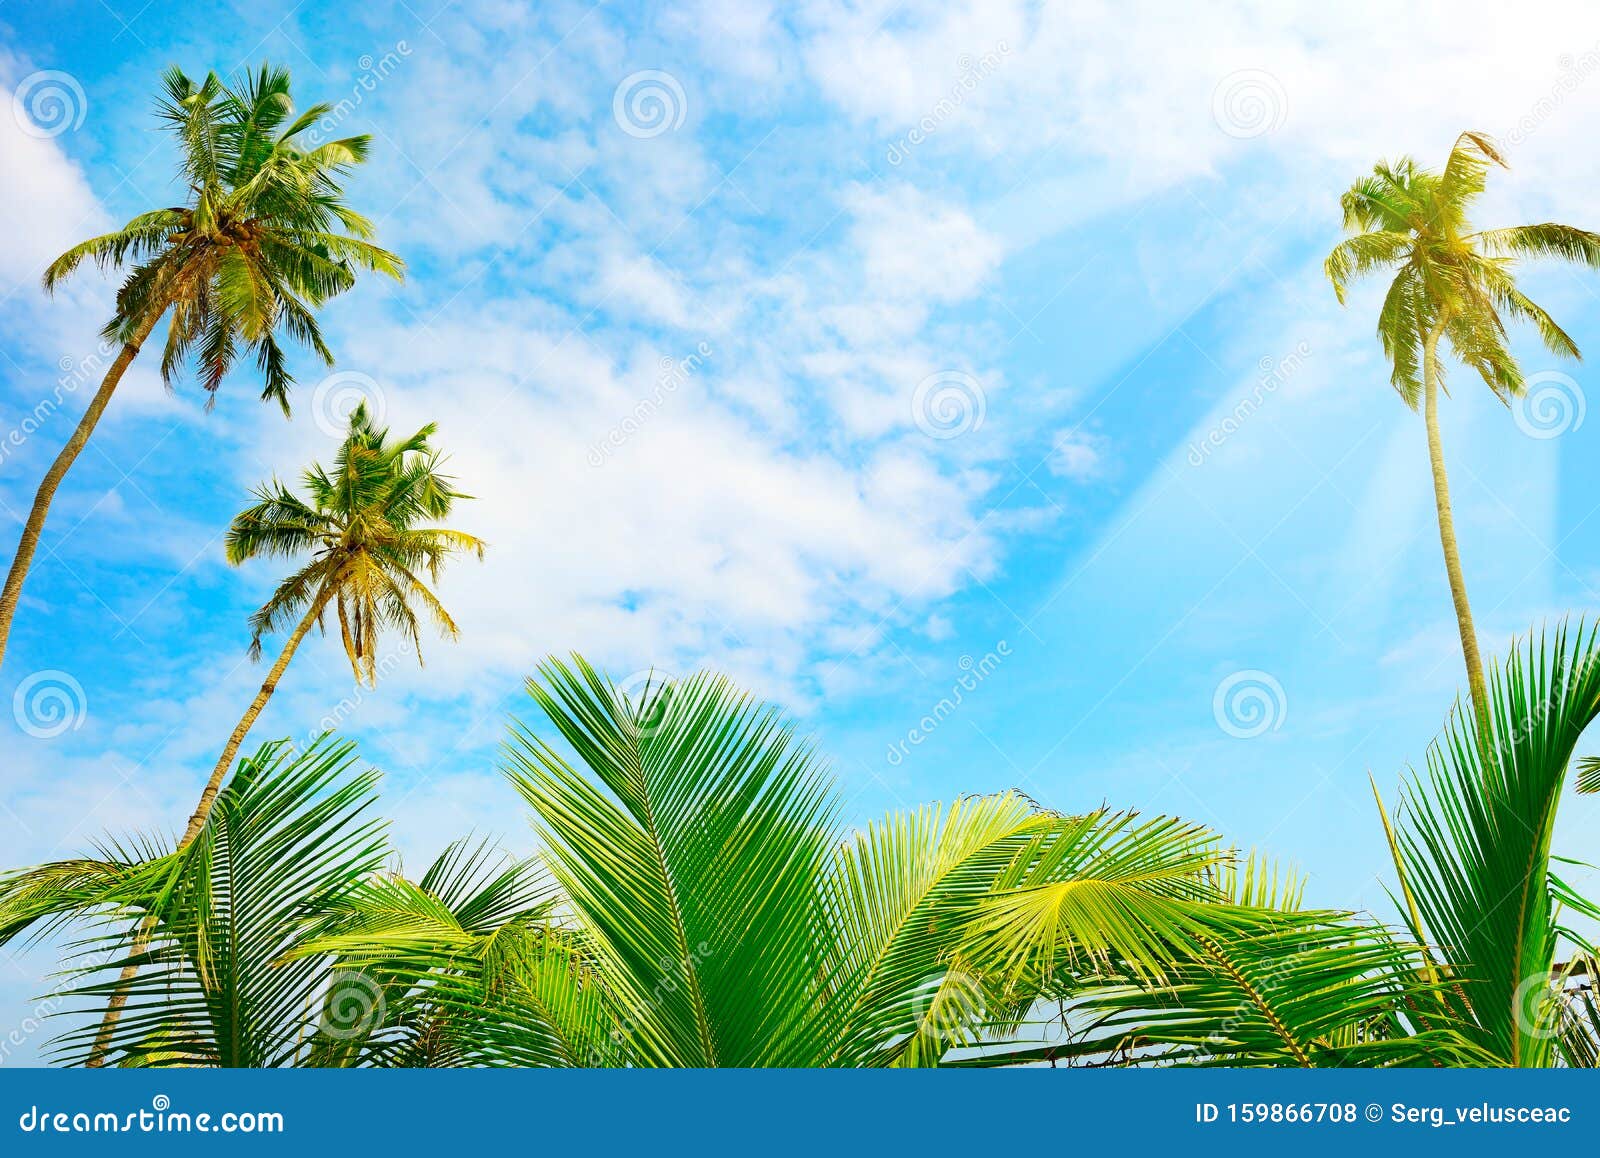 Hình ảnh của cây dừa là một trong những khung cảnh đẹp nhất của thiên nhiên. Màu xanh vàng lan tỏa trên bãi biển với ánh nắng mặt trời chói chang, tạo nên một khung cảnh đầy sống động và hấp dẫn. Hãy trân trọng và đón nhận những giây phút đắm chìm trong không gian yên bình này.